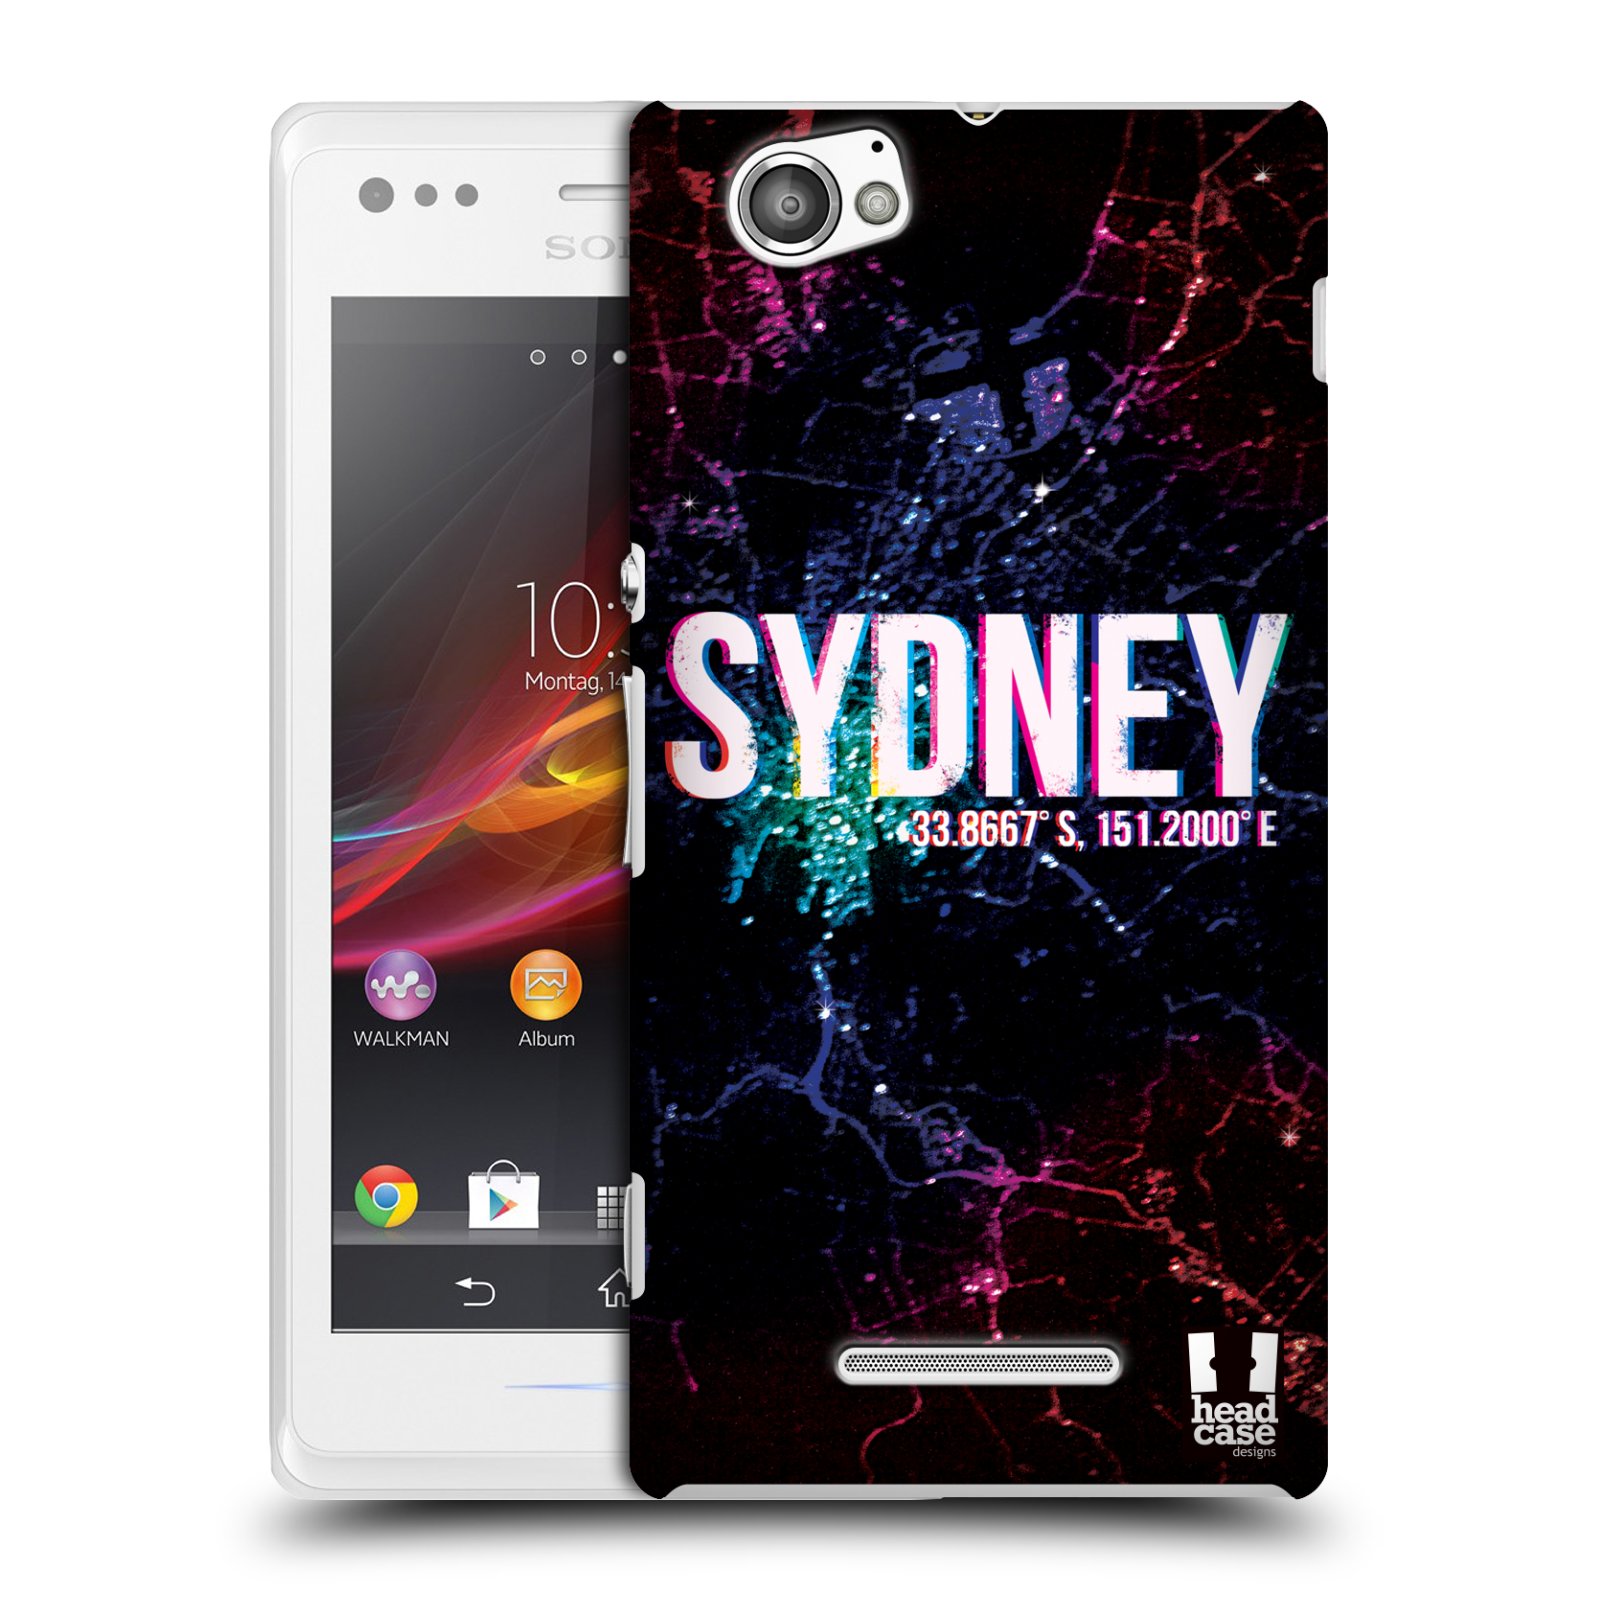 HEAD CASE plastový obal na mobil Sony Xperia M vzor Světla známých měst, Satelitní snímky AUSTRÁLIE, SYDNEY